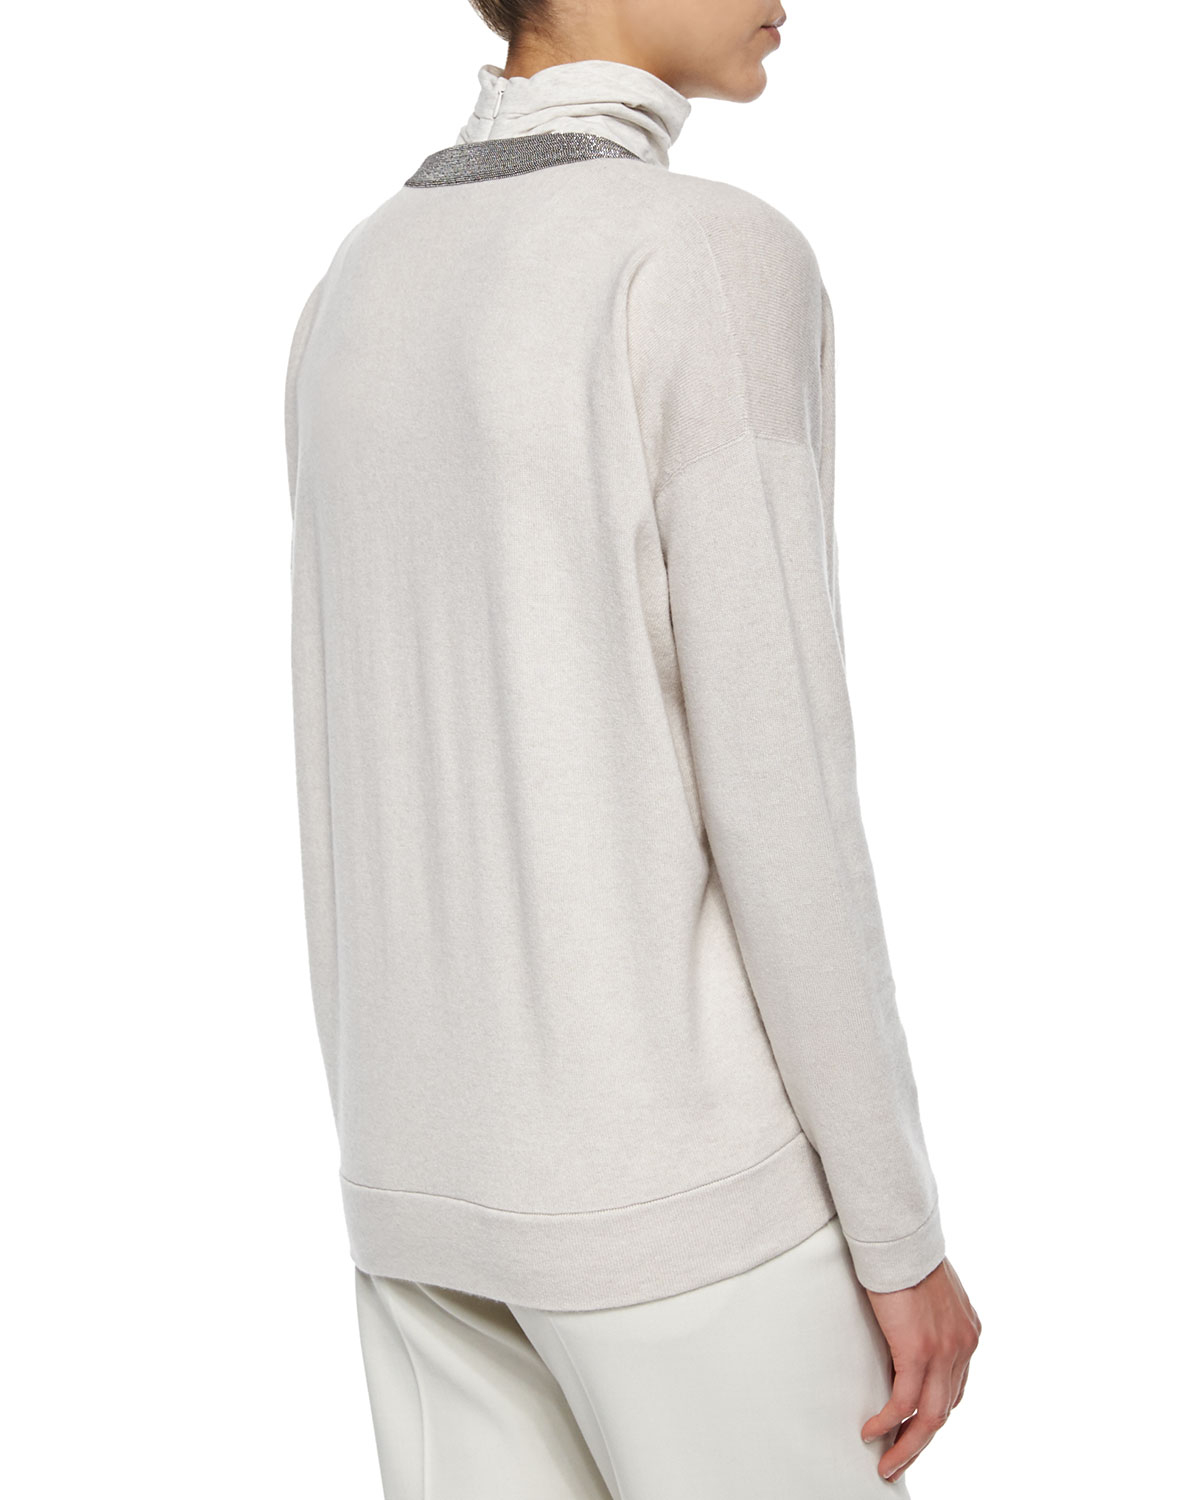 Lyst - Brunello Cucinelli Monili-trim V-neck Cashmere Sweater in White